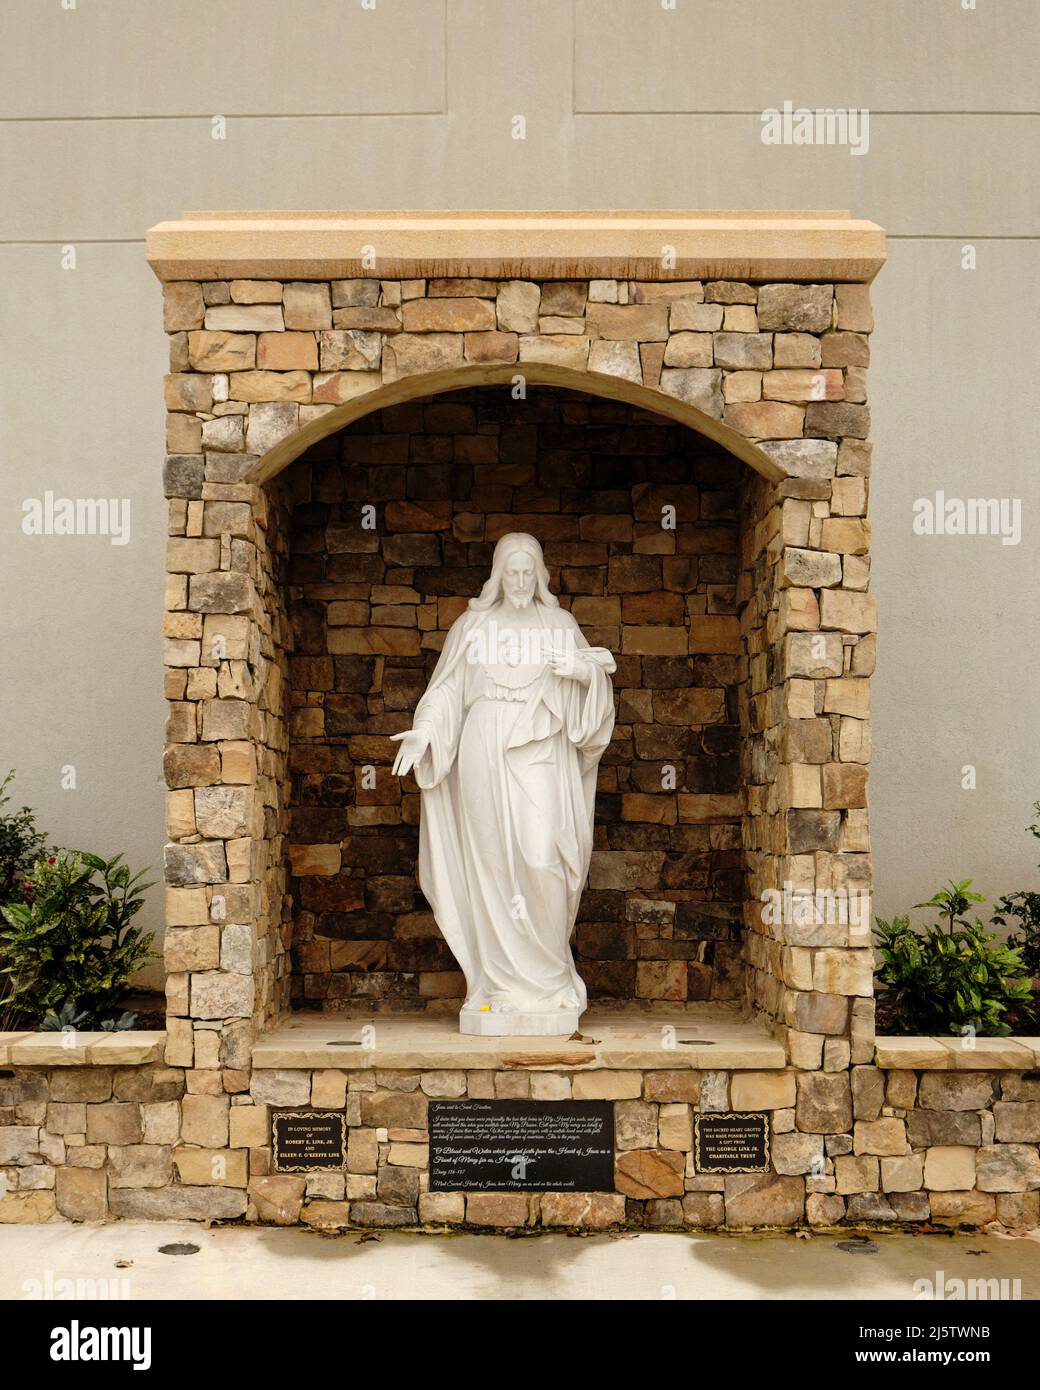 Estatua de Jesucristo, un símbolo religioso cristiano, en una gruta de piedra como monumento conmemorativo en Blue Ridge Georgia, Estados Unidos. Foto de stock